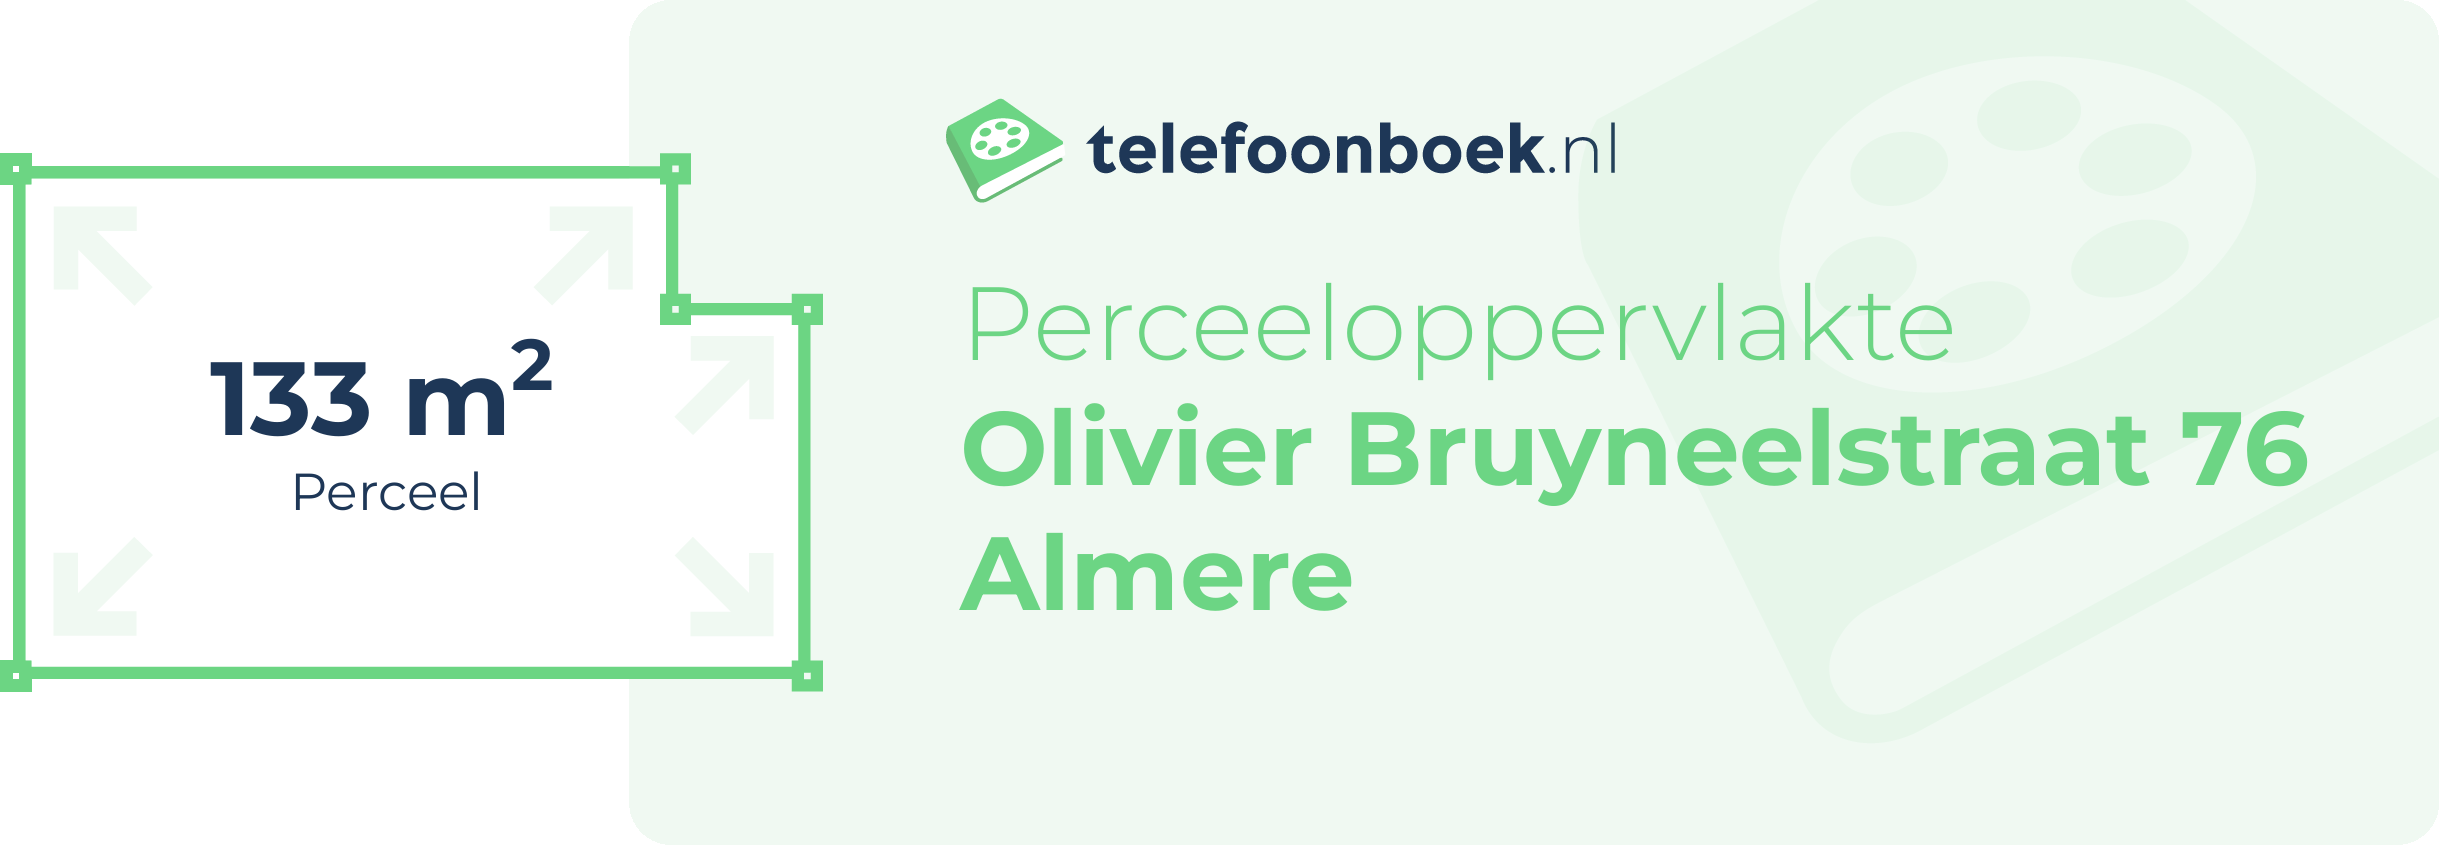 Perceeloppervlakte Olivier Bruyneelstraat 76 Almere